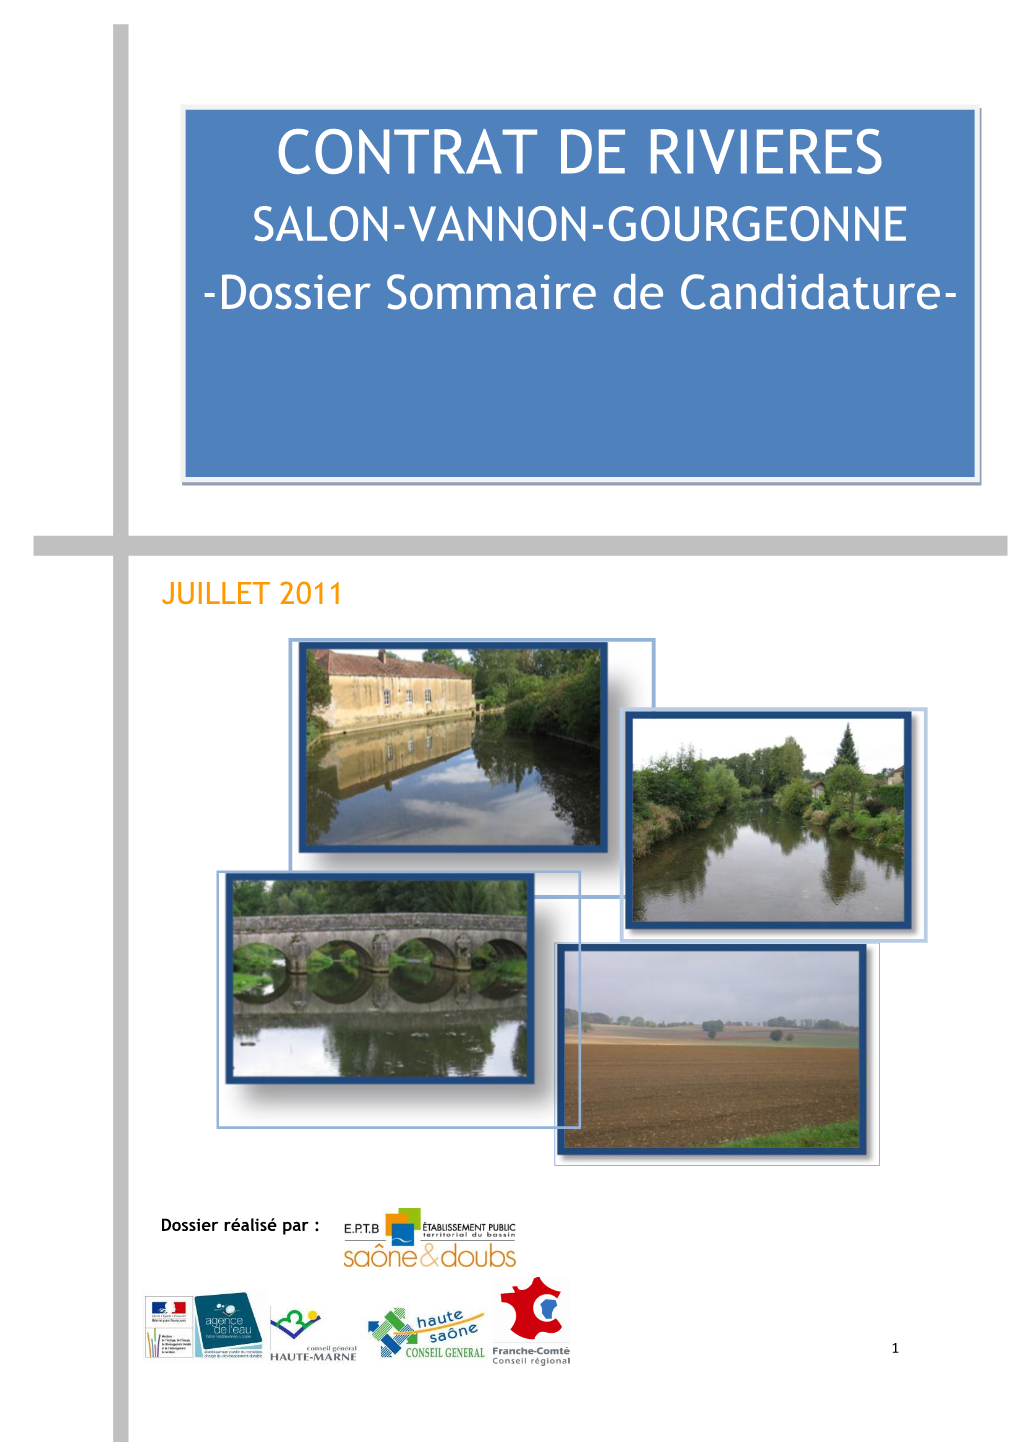 CONTRAT DE RIVIERES SALON-VANNON-GOURGEONNE -Dossier Sommaire De Candidature